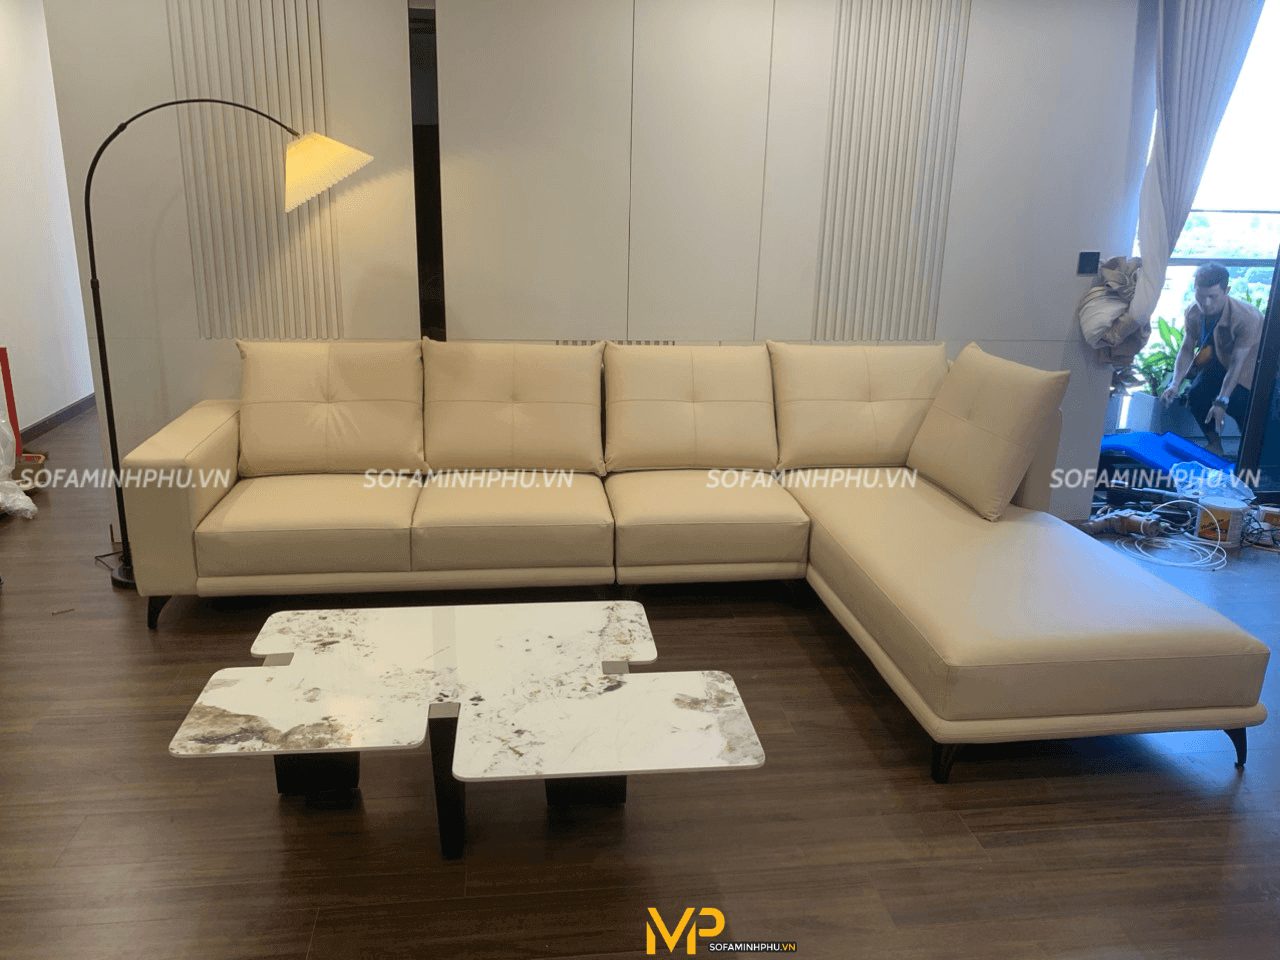 Lắp đặt và bàn giao sofa góc cho nhà chị Linh – Hà Nội